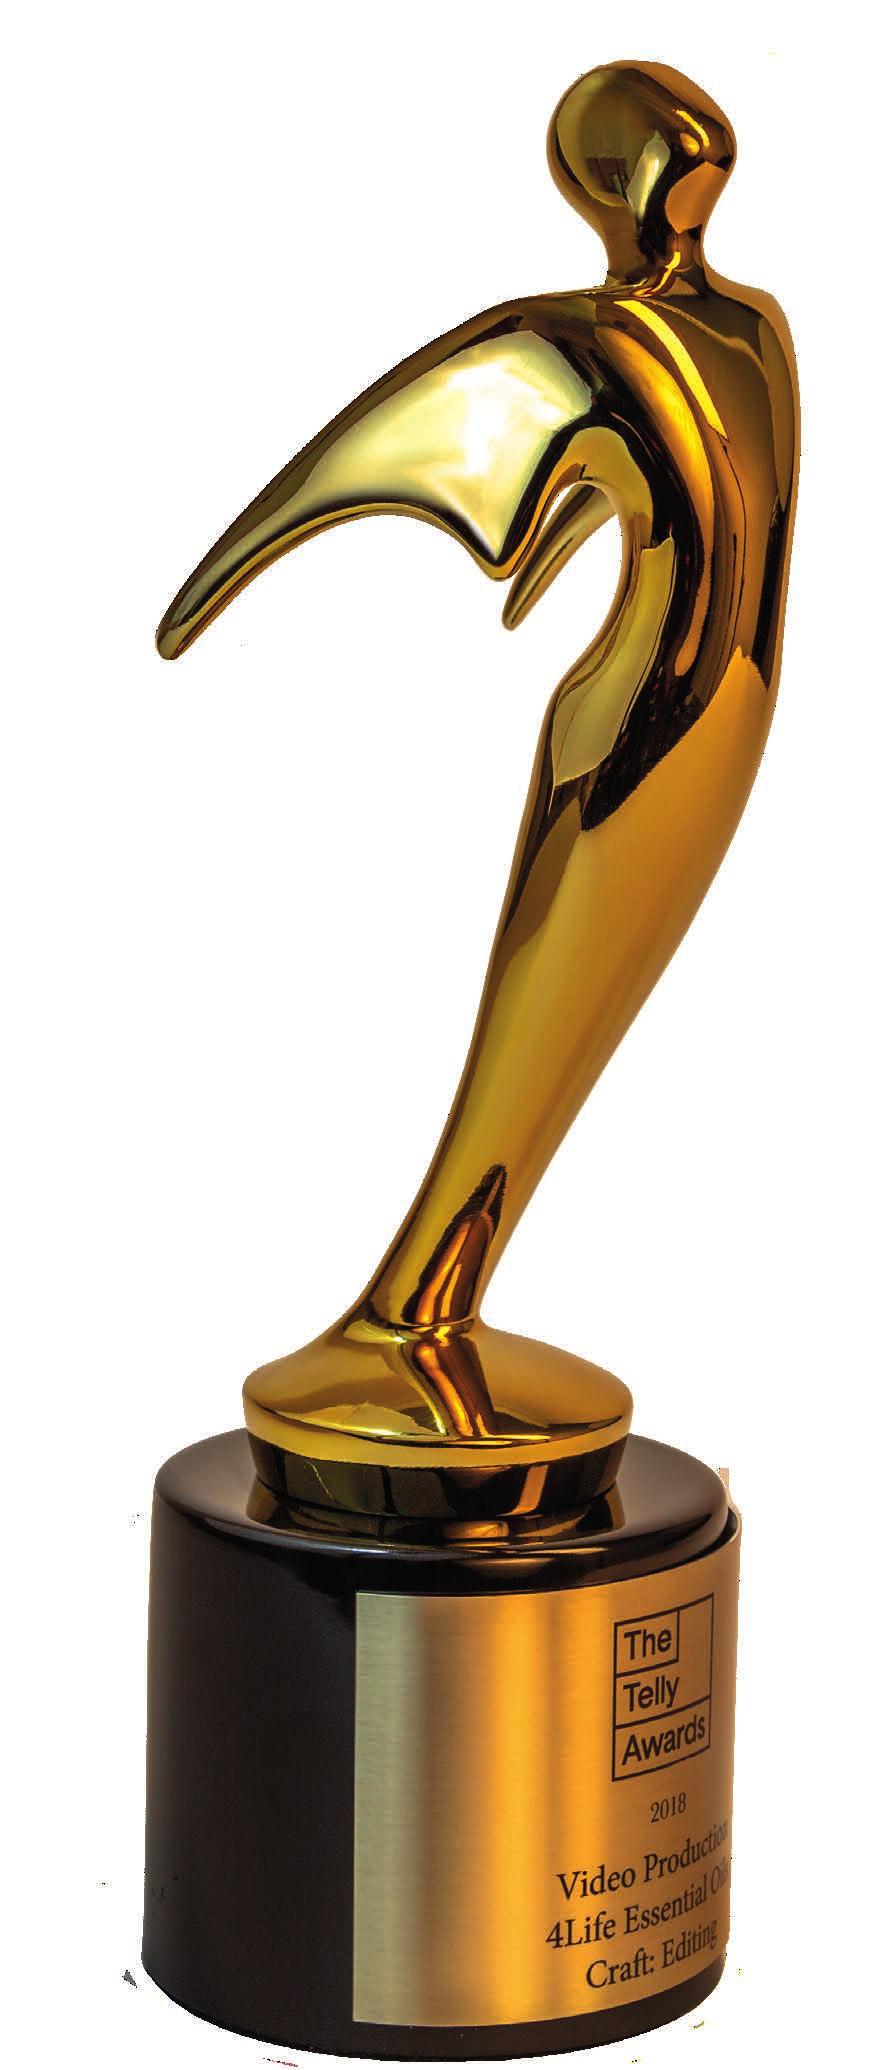 4Life gewinnt 6 Telly Awards Zum ersten Mal in der Unternehmensgeschichte wurde 4Life mit sechs Telly Awards ausgezeichnet, darunter zwei goldene und